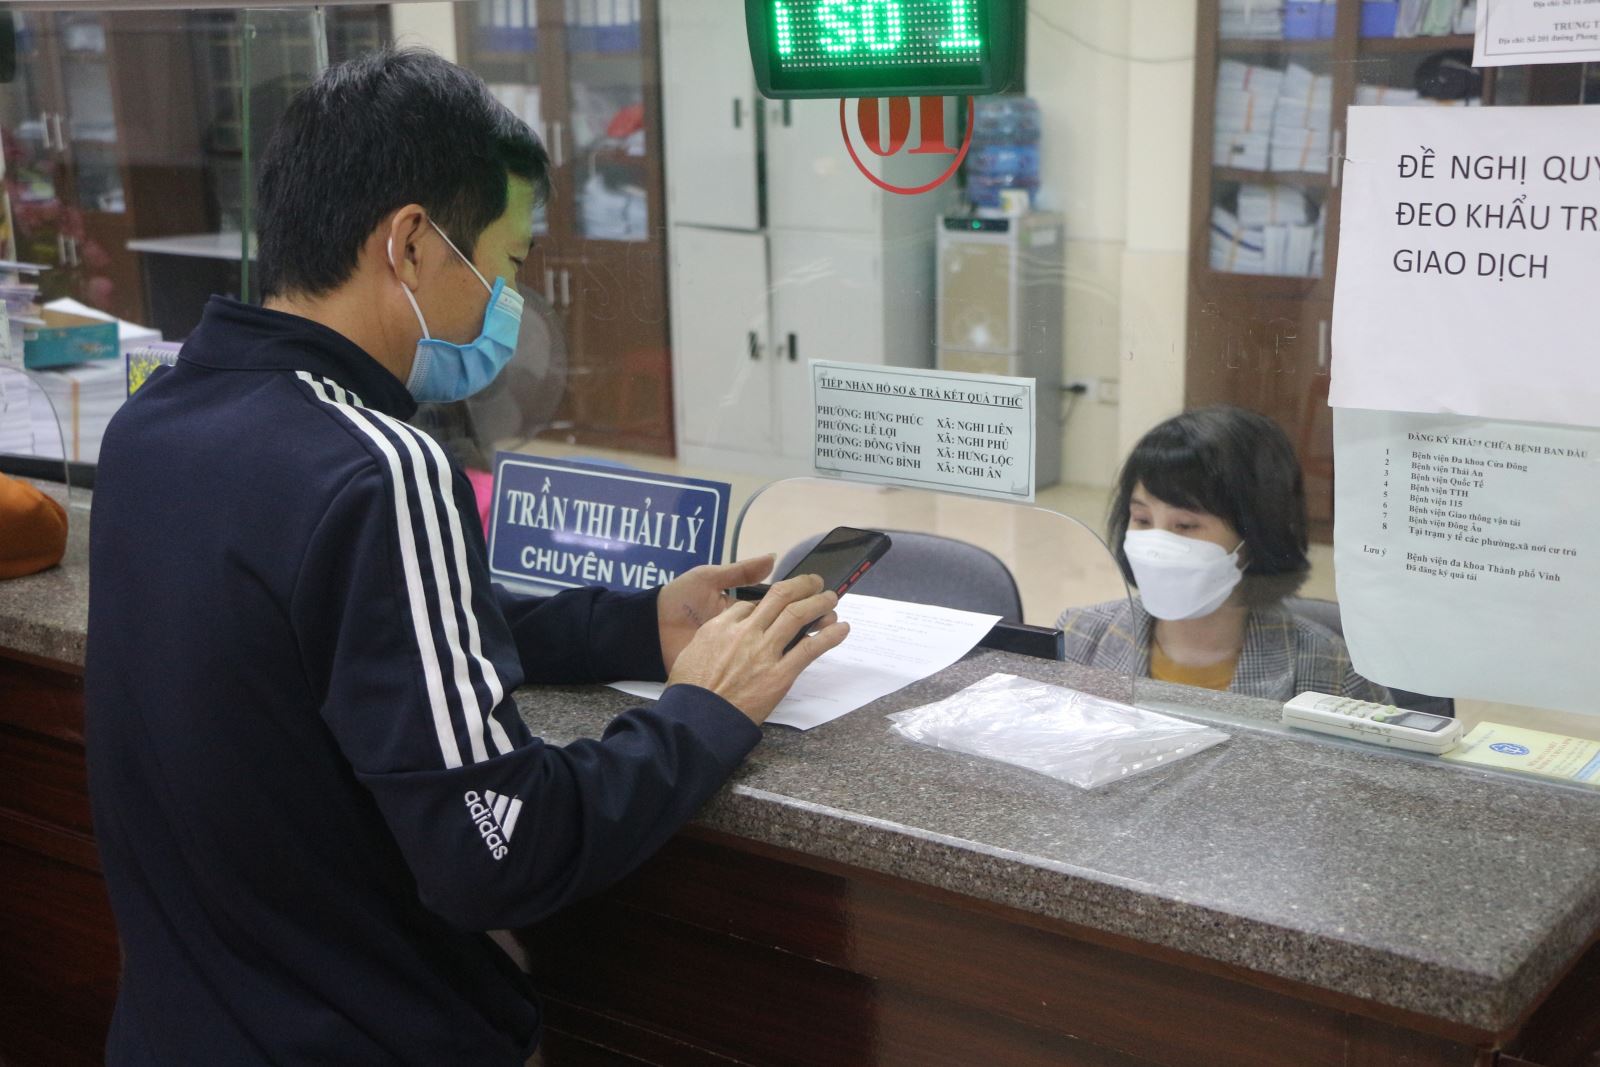 Người lao động đến làm thủ tục nhận Bảo hiểm thất nghiệp tại Bảo hiểm Xã hội tỉnh Nghệ An